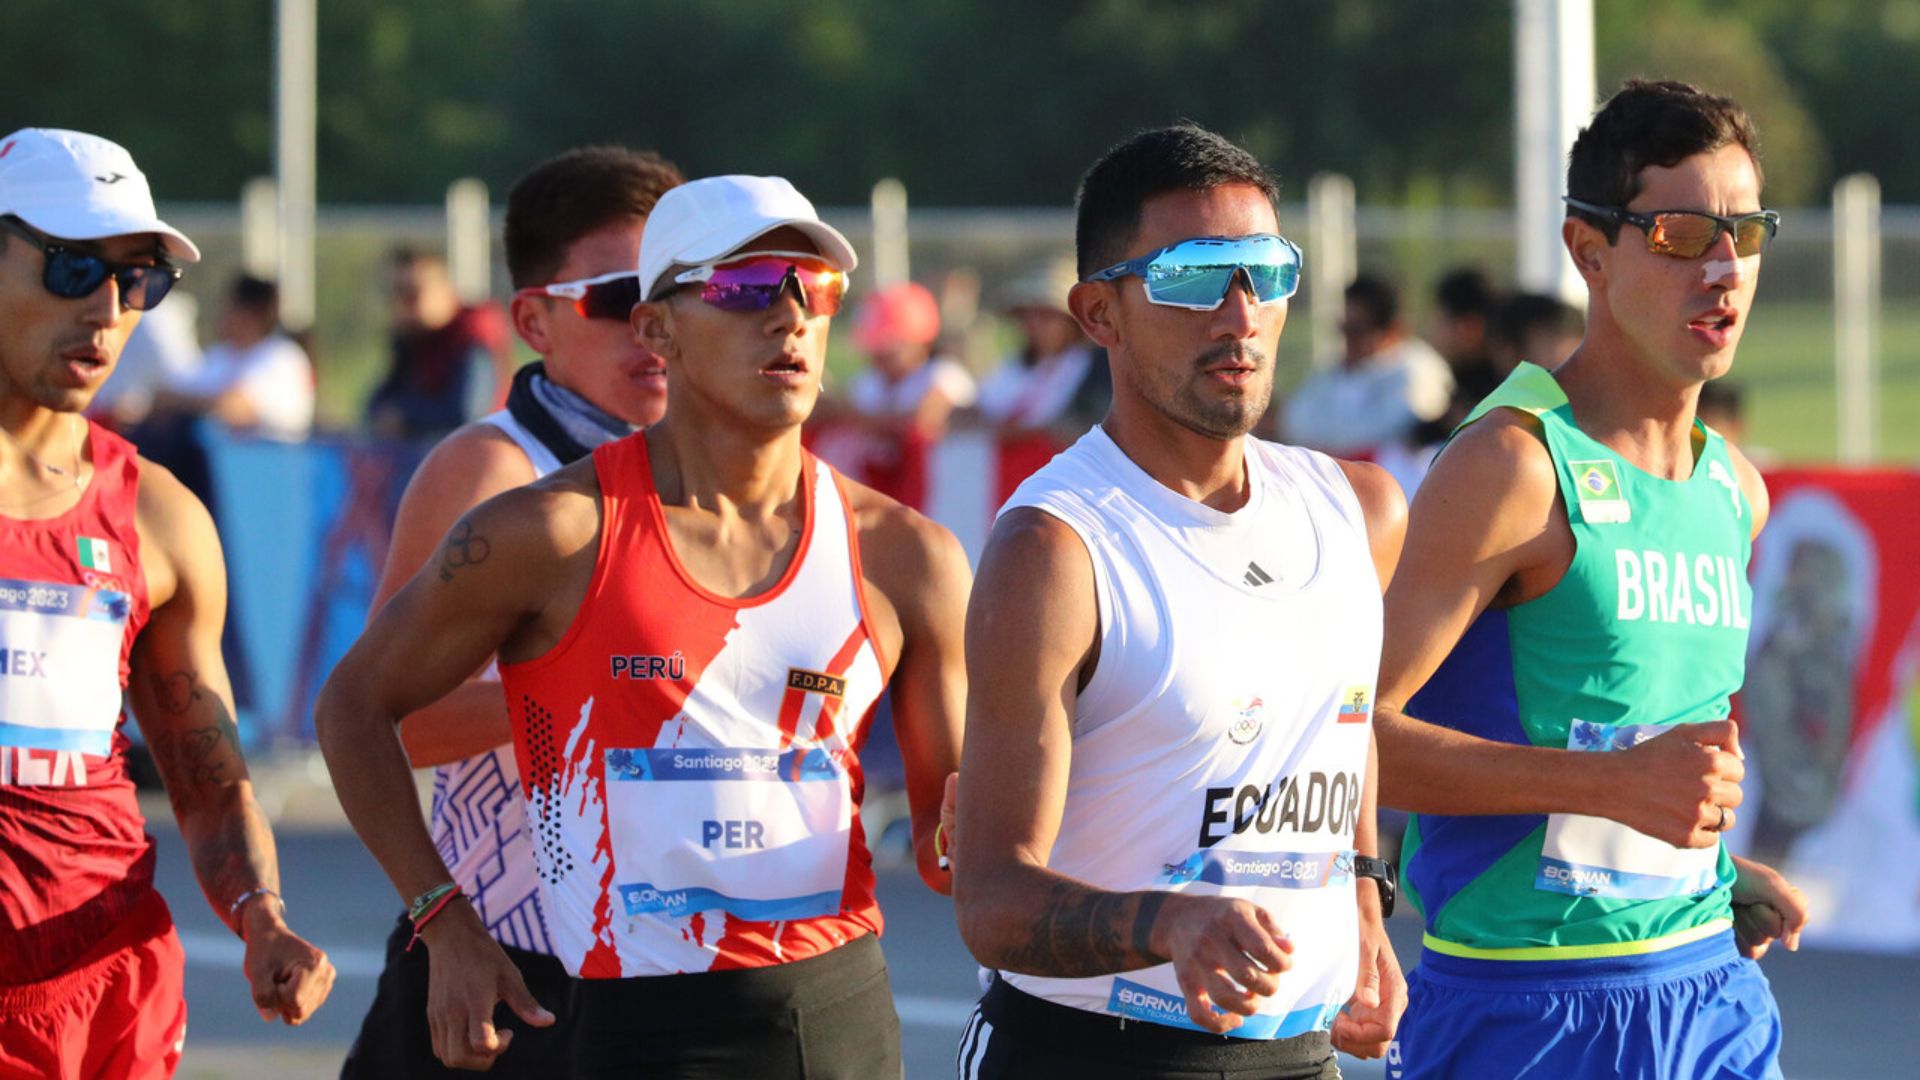 Maratón marcha relevo mixto: el oro es para Ecuador